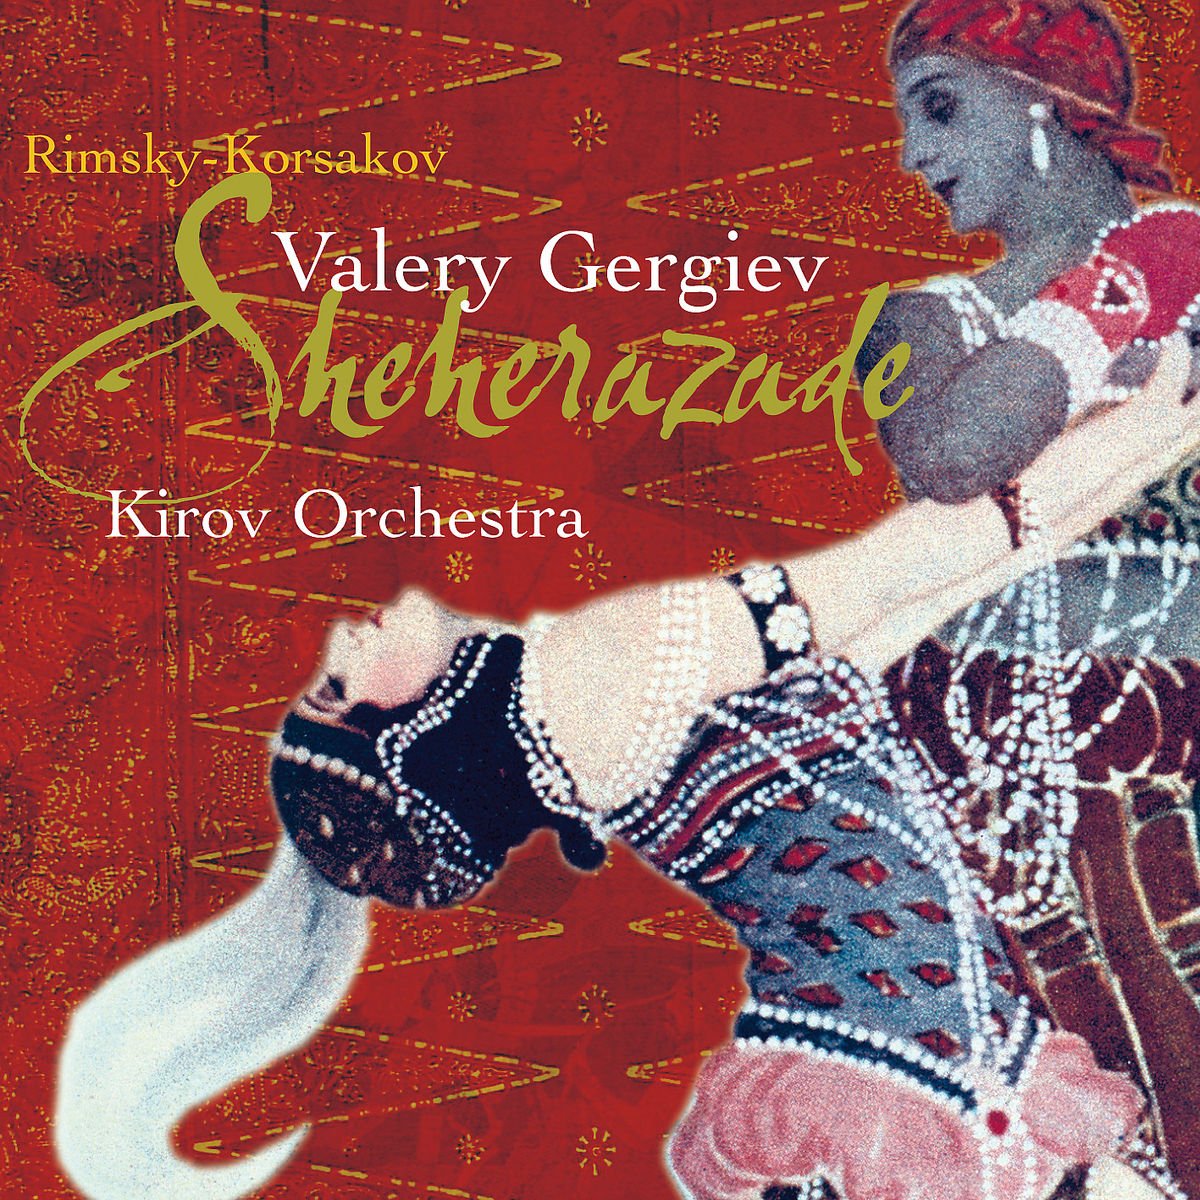 Rimsky-Korsakov:Schehrazade on MovieShack